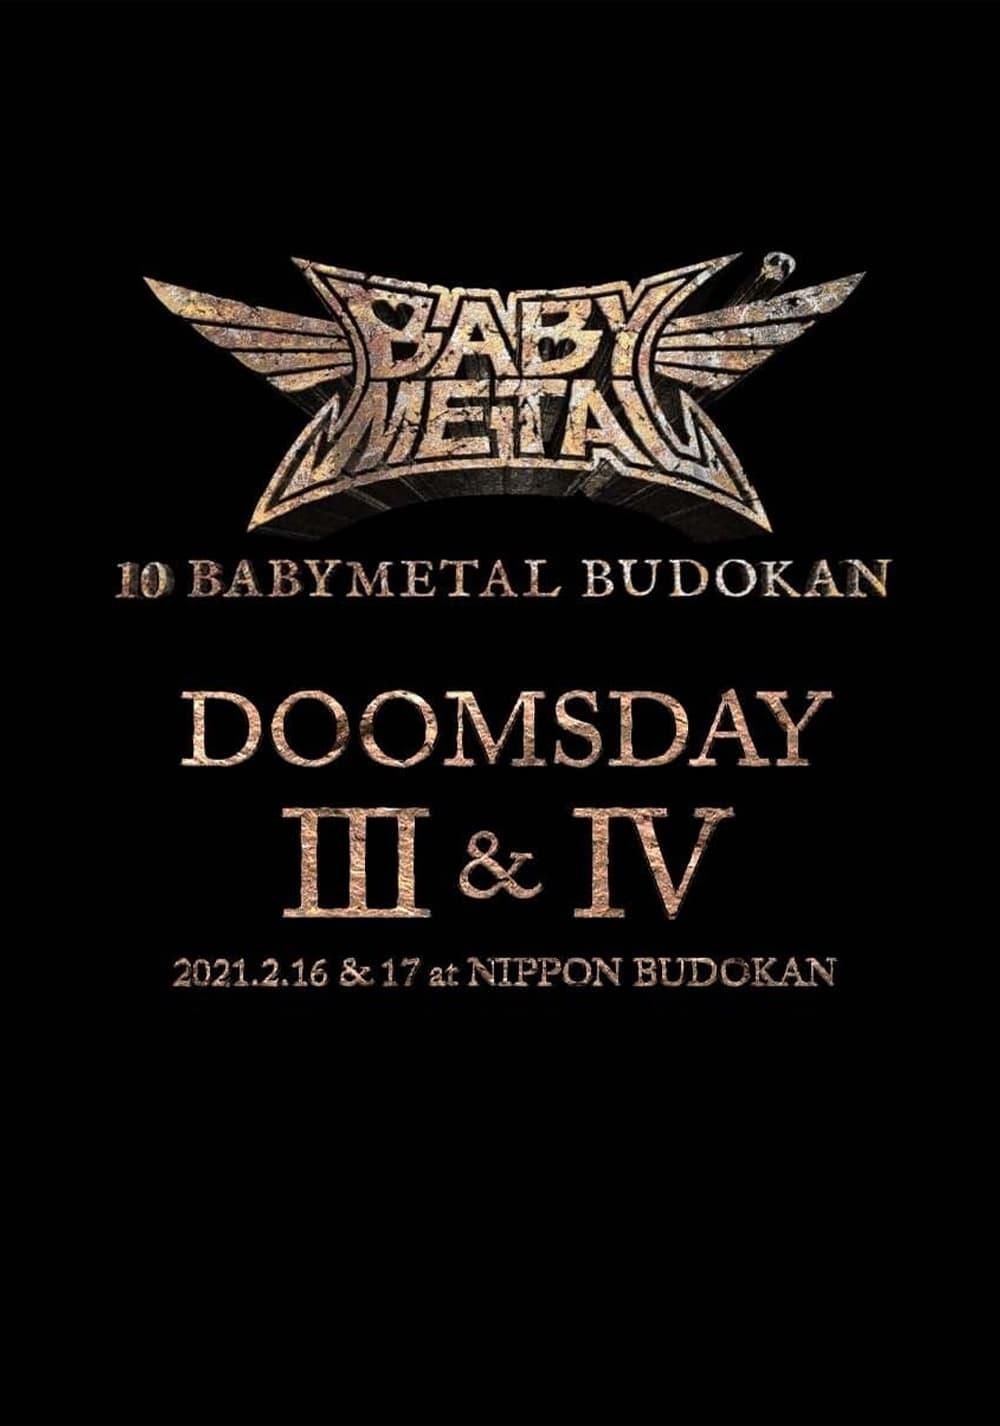 10 BABYMETAL BUDOKAN - DOOMSDAY III & IV poster